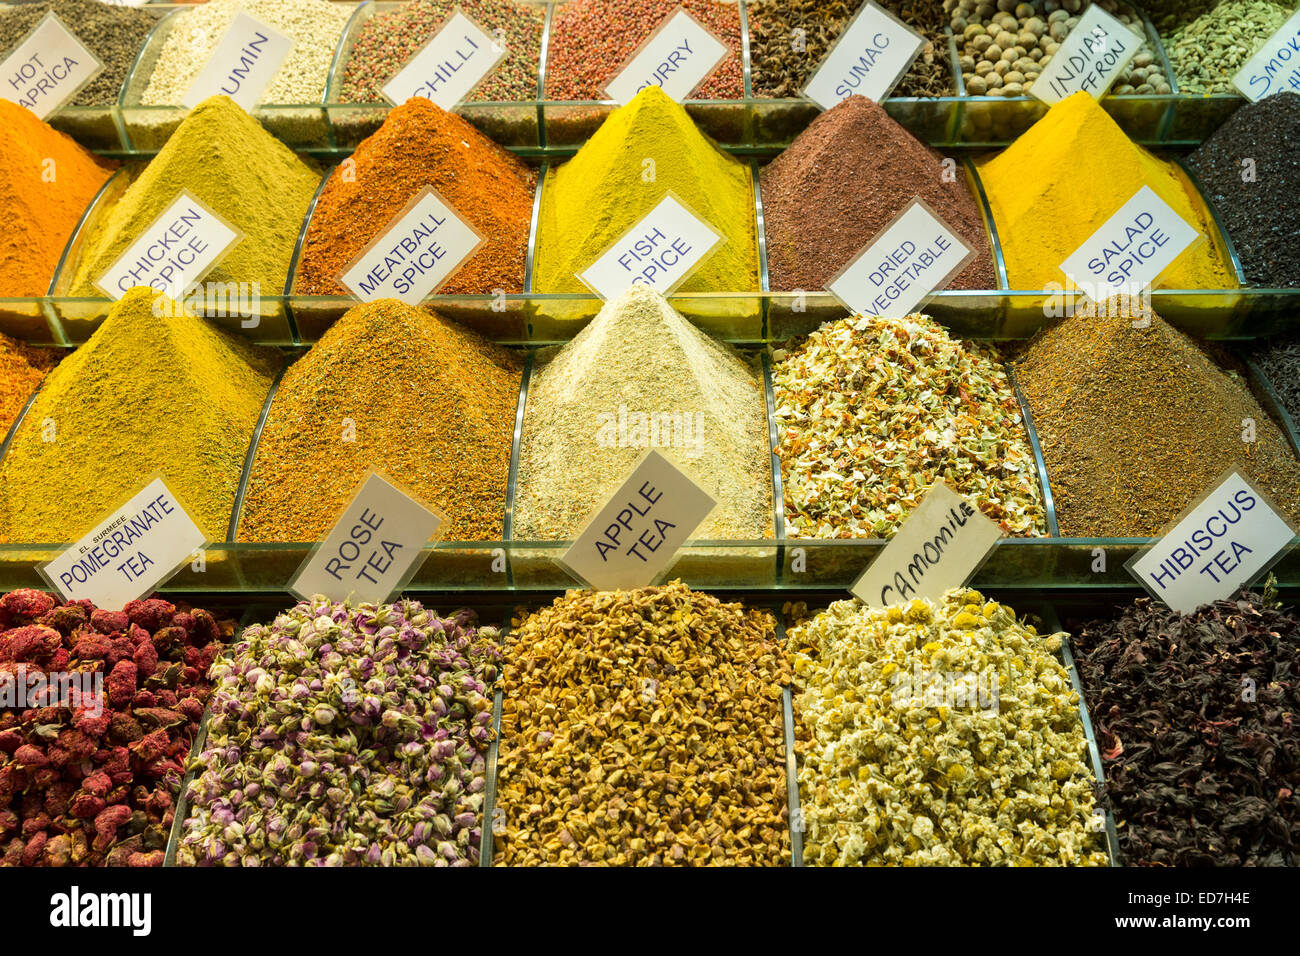 Traditionelle Spezialität Tee und Gewürze auf dem Misir Carsisi ägyptischen Basar Lebensmittel und Gewürz-Markt in Istanbul, Türkei Stockfoto